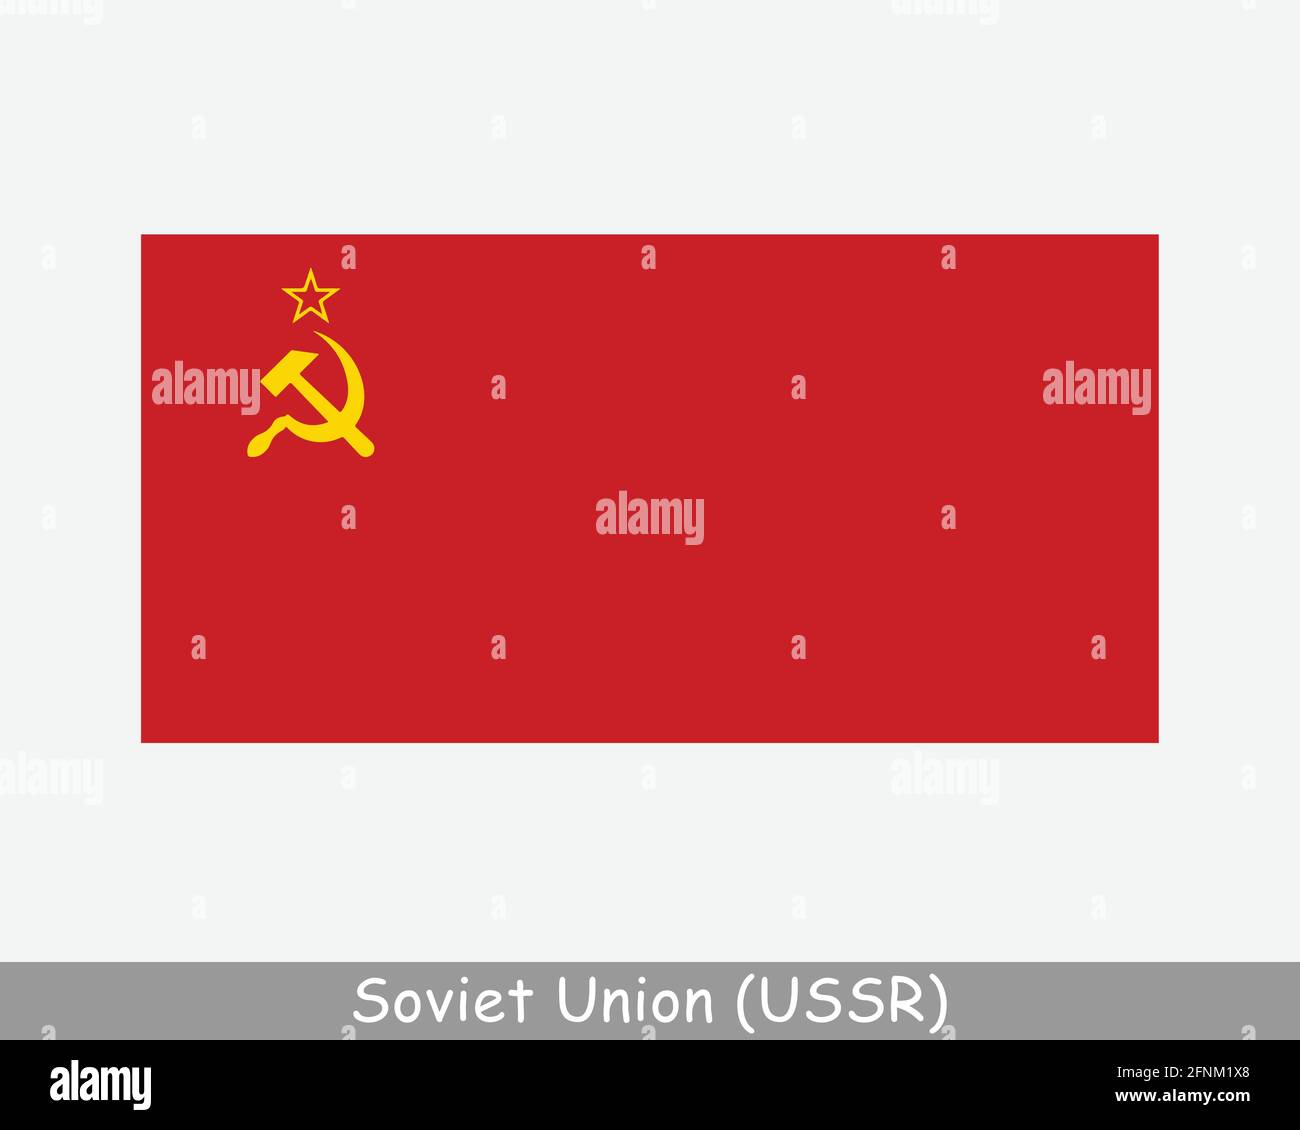 Nationalflagge der Sowjetunion. Flagge des Landes der UdSSR. Union der Sozialistischen Sowjetrepubliken detailliertes Banner. EPS-Vektorgrafik Datei ausschneiden Stock Vektor